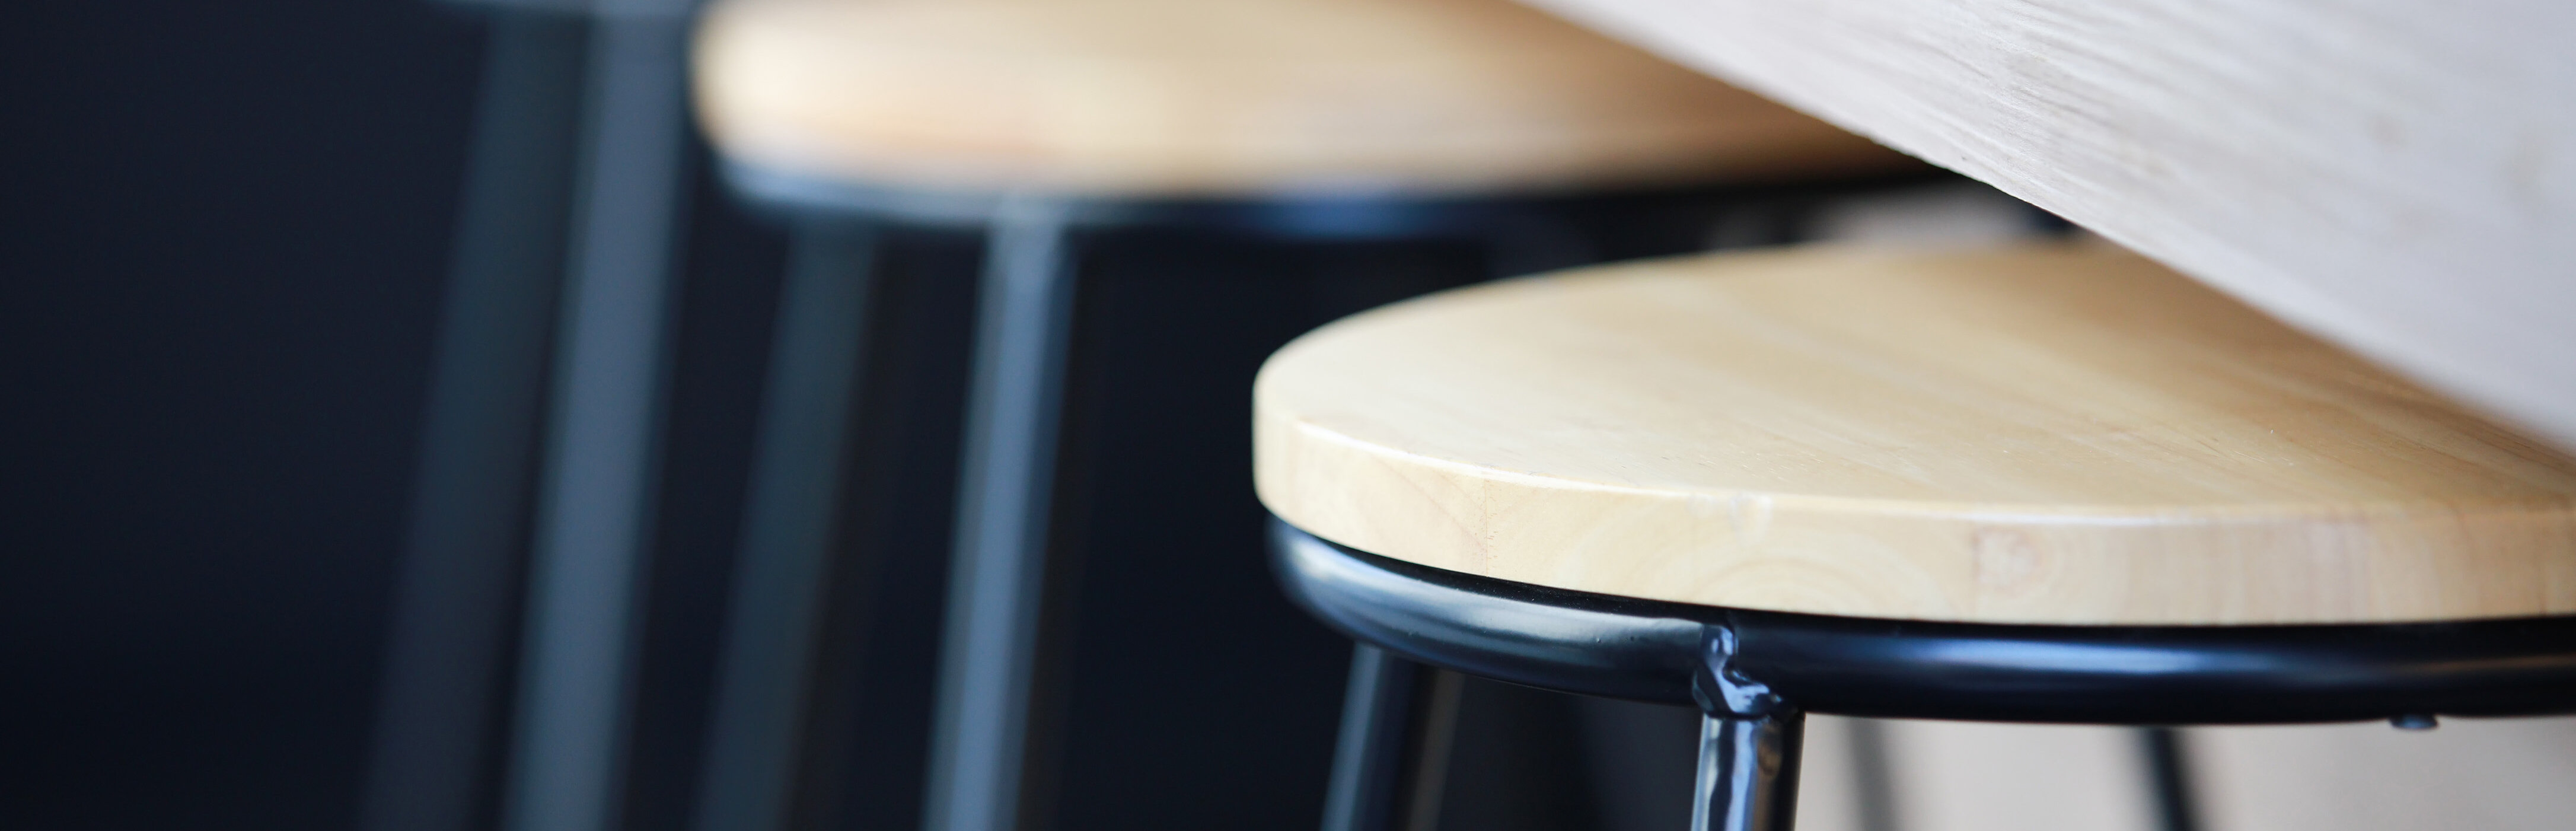 Nahaufnahme von Barhockern und Tisch in Holzoptik. Oberflächen sind mit Pulverlack beschichtet. | © Shutterstock